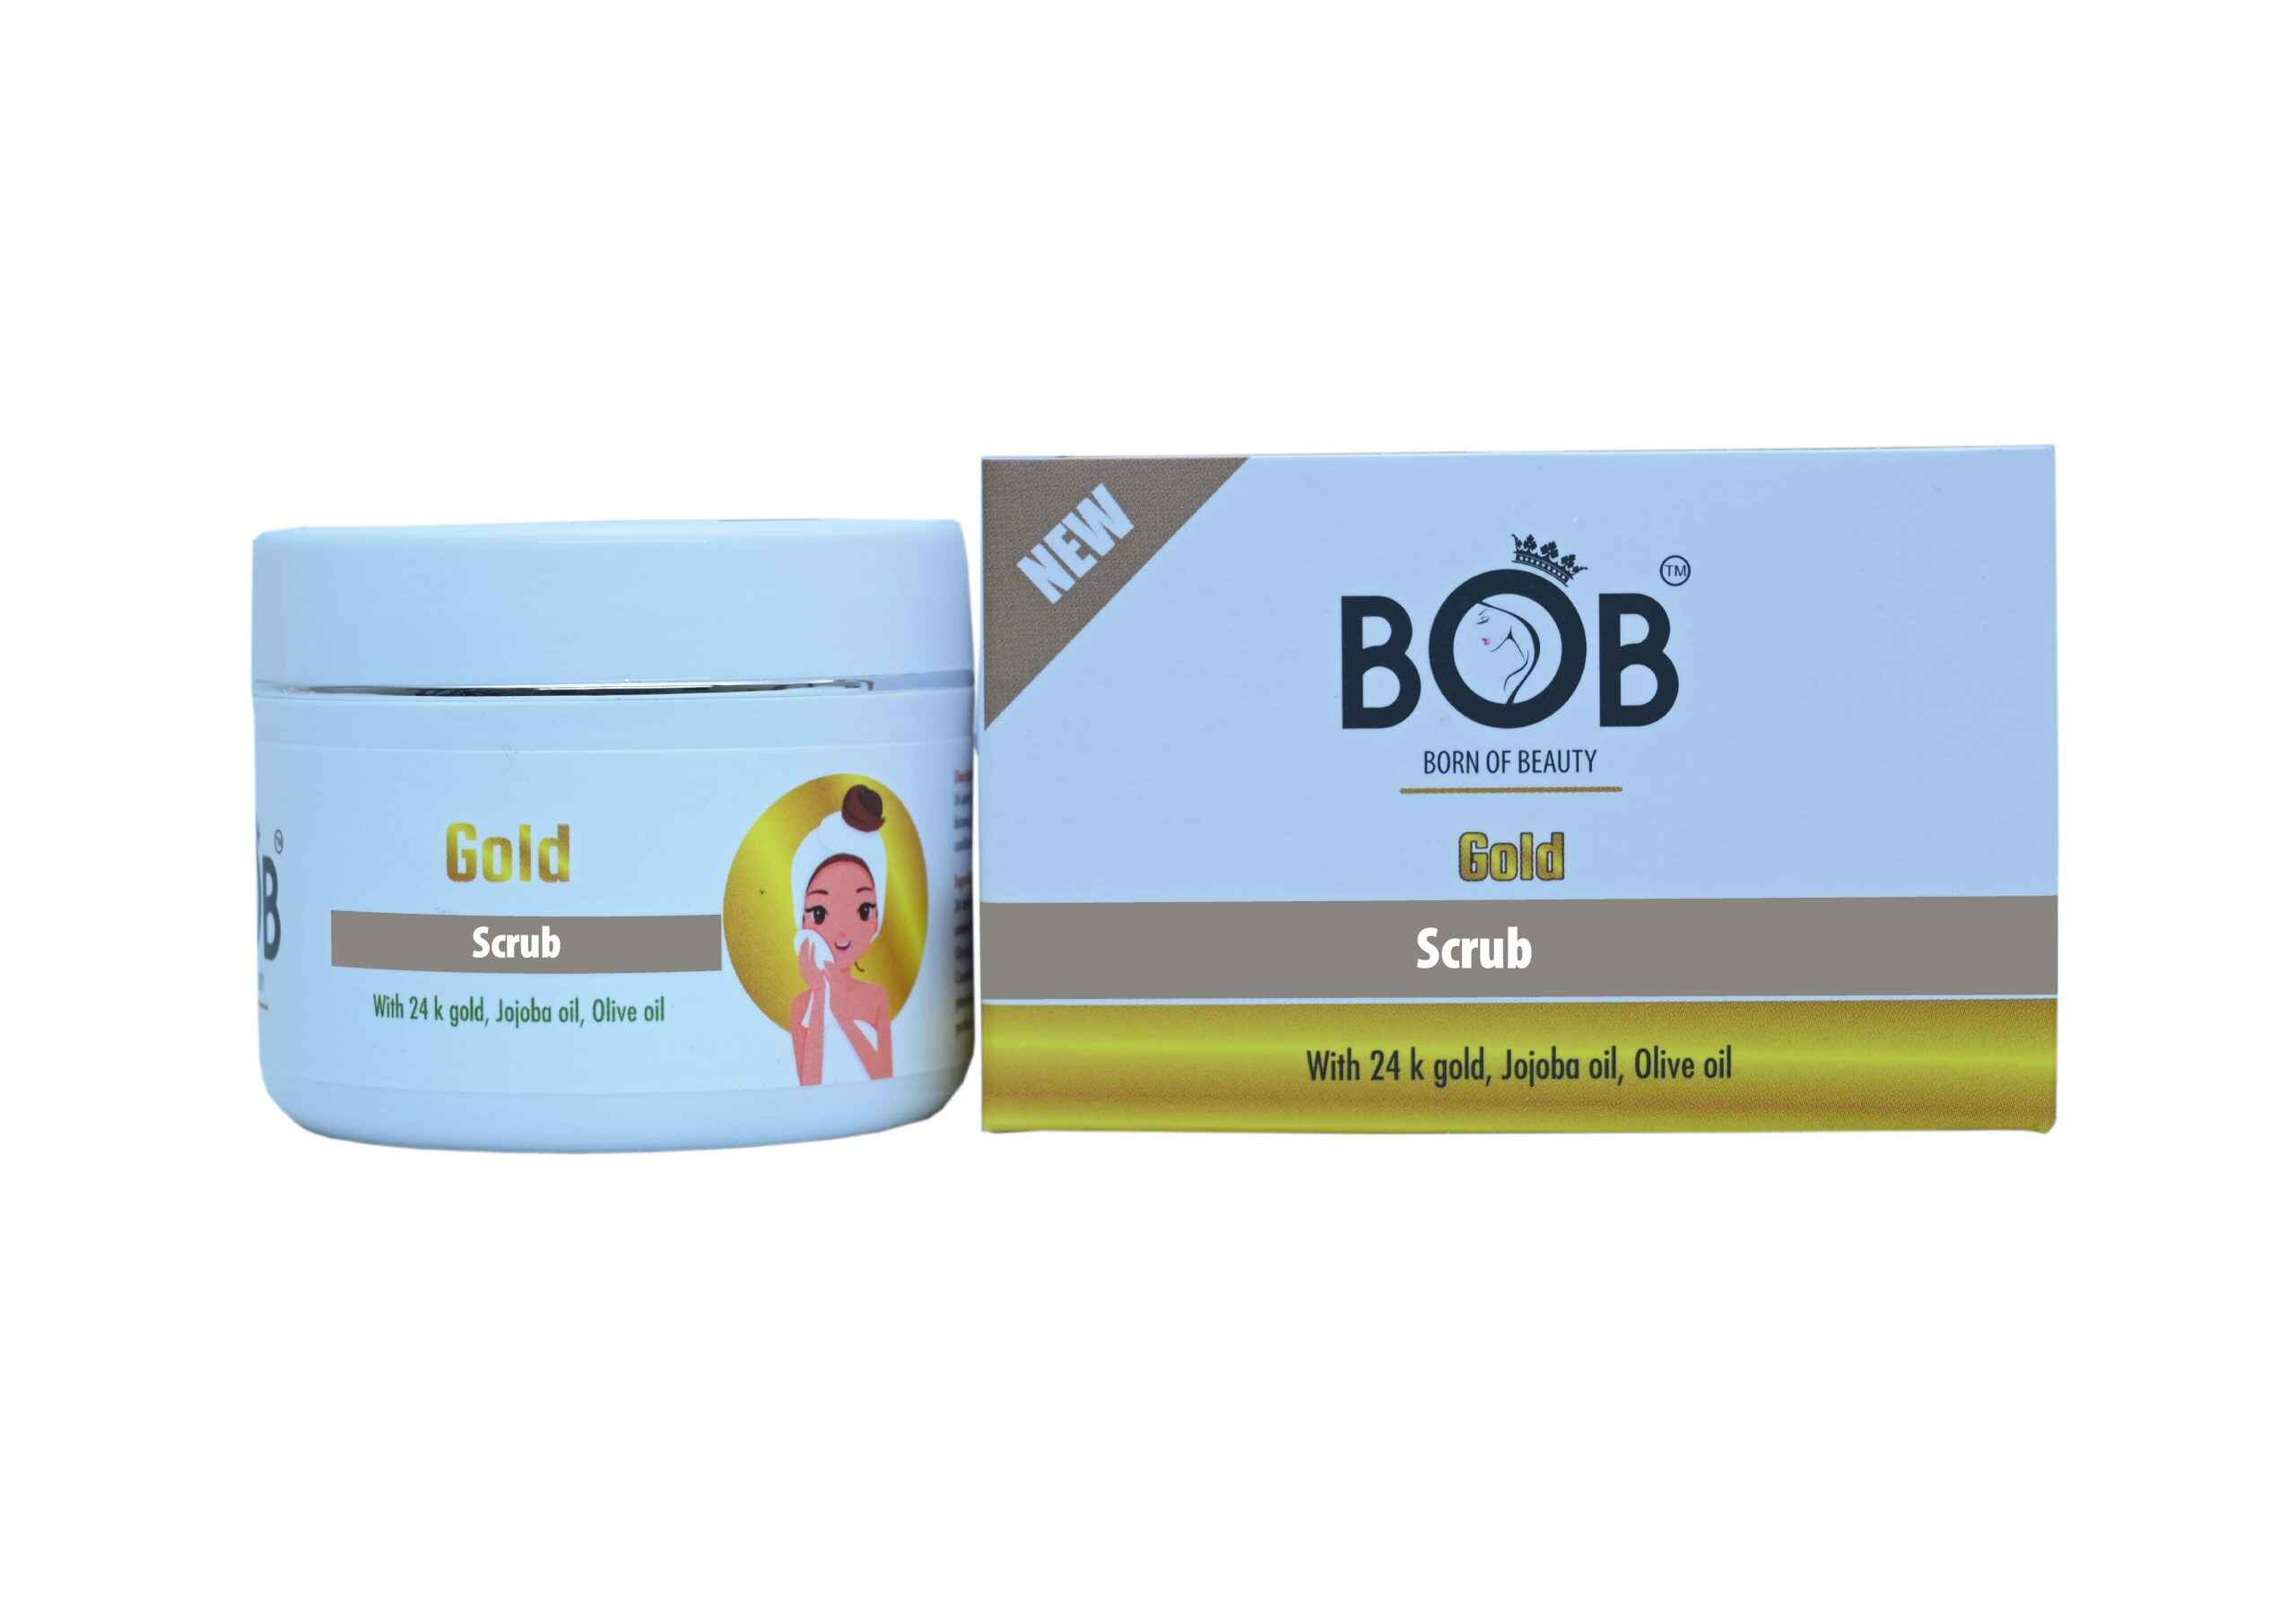 BOB Gold Facial Scrub With 24 k Gold, Jojoba Oil, Olive Oil